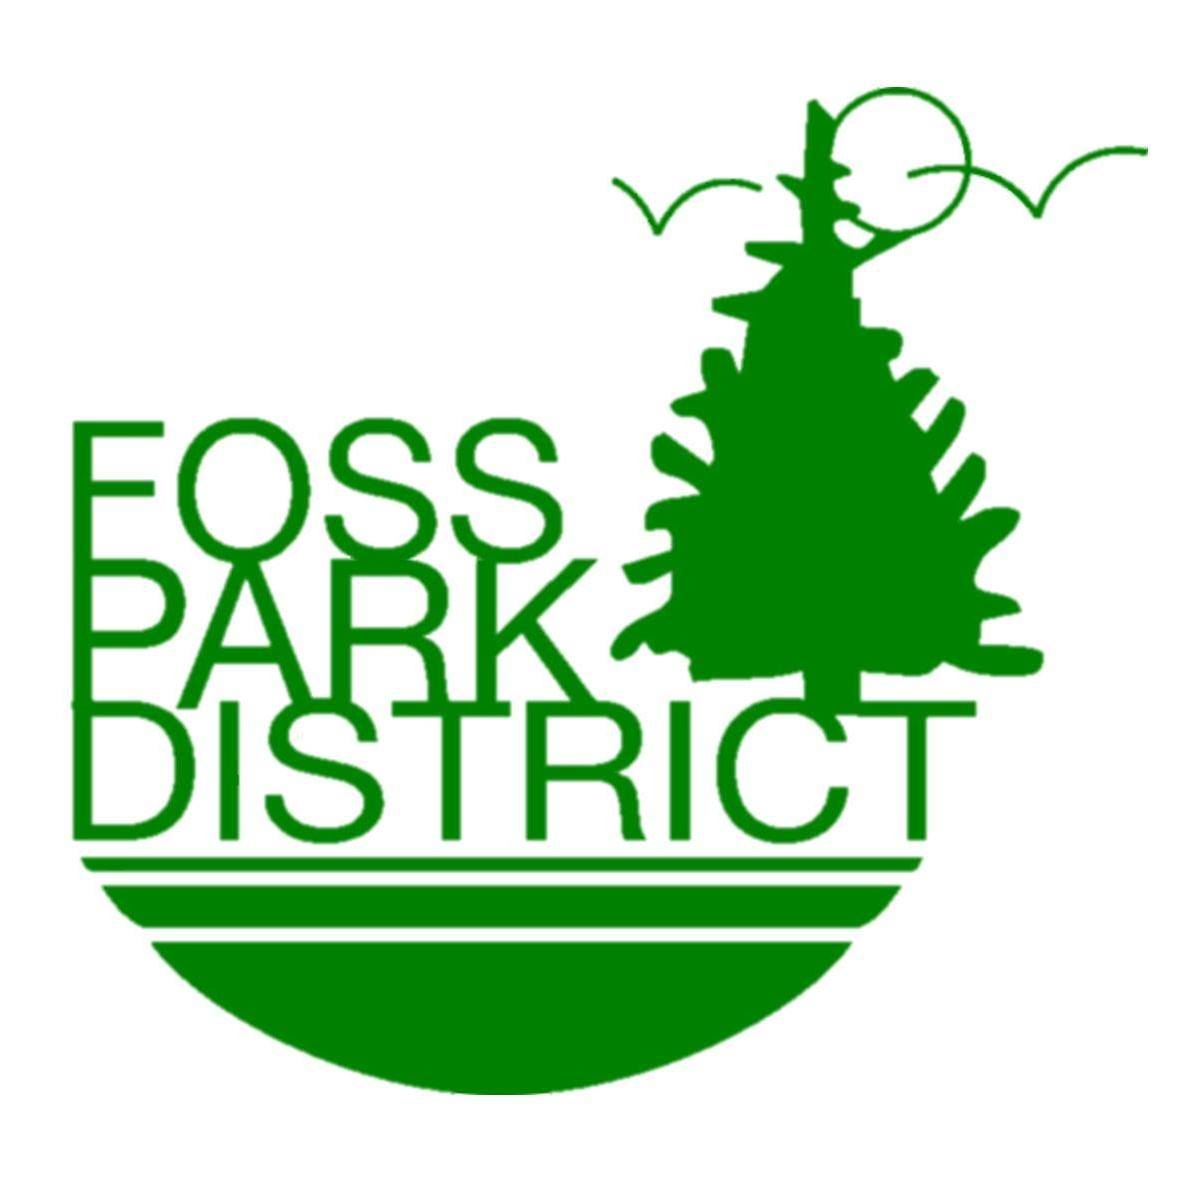 Foss Park District